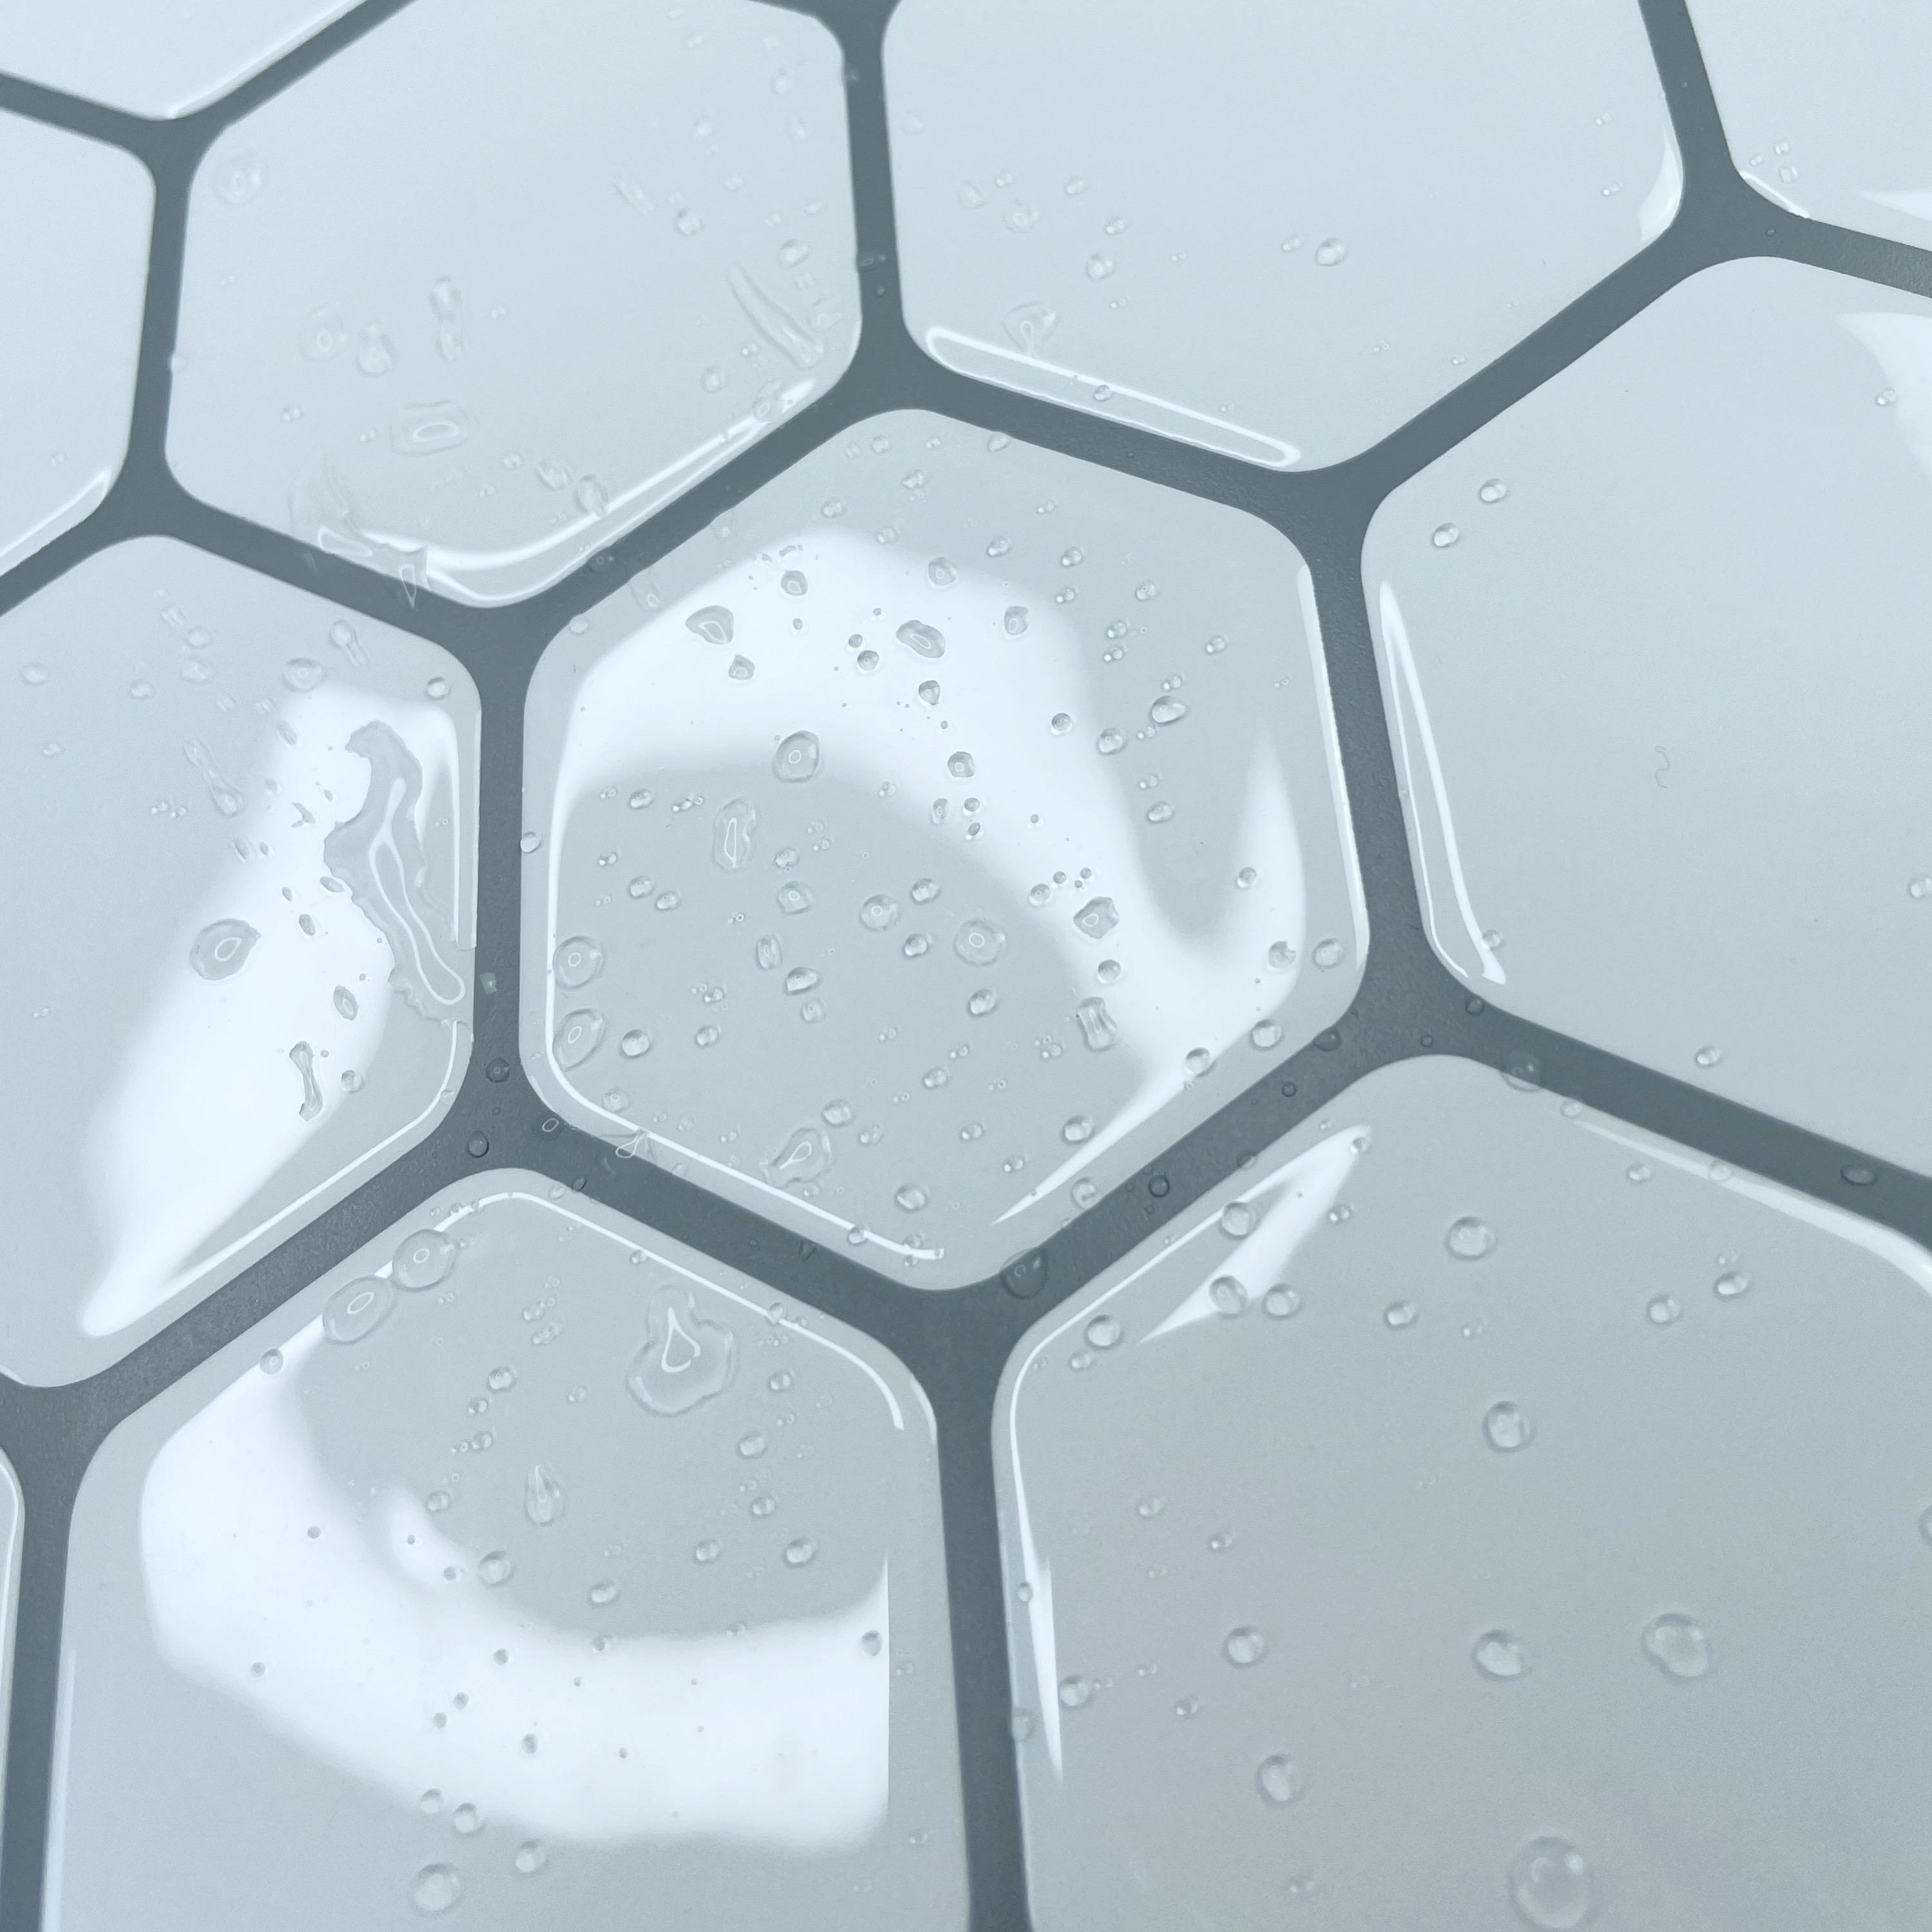 Nalepovaci obklad - 3D mozaika - bile 6-uhelniky oprskany vodou